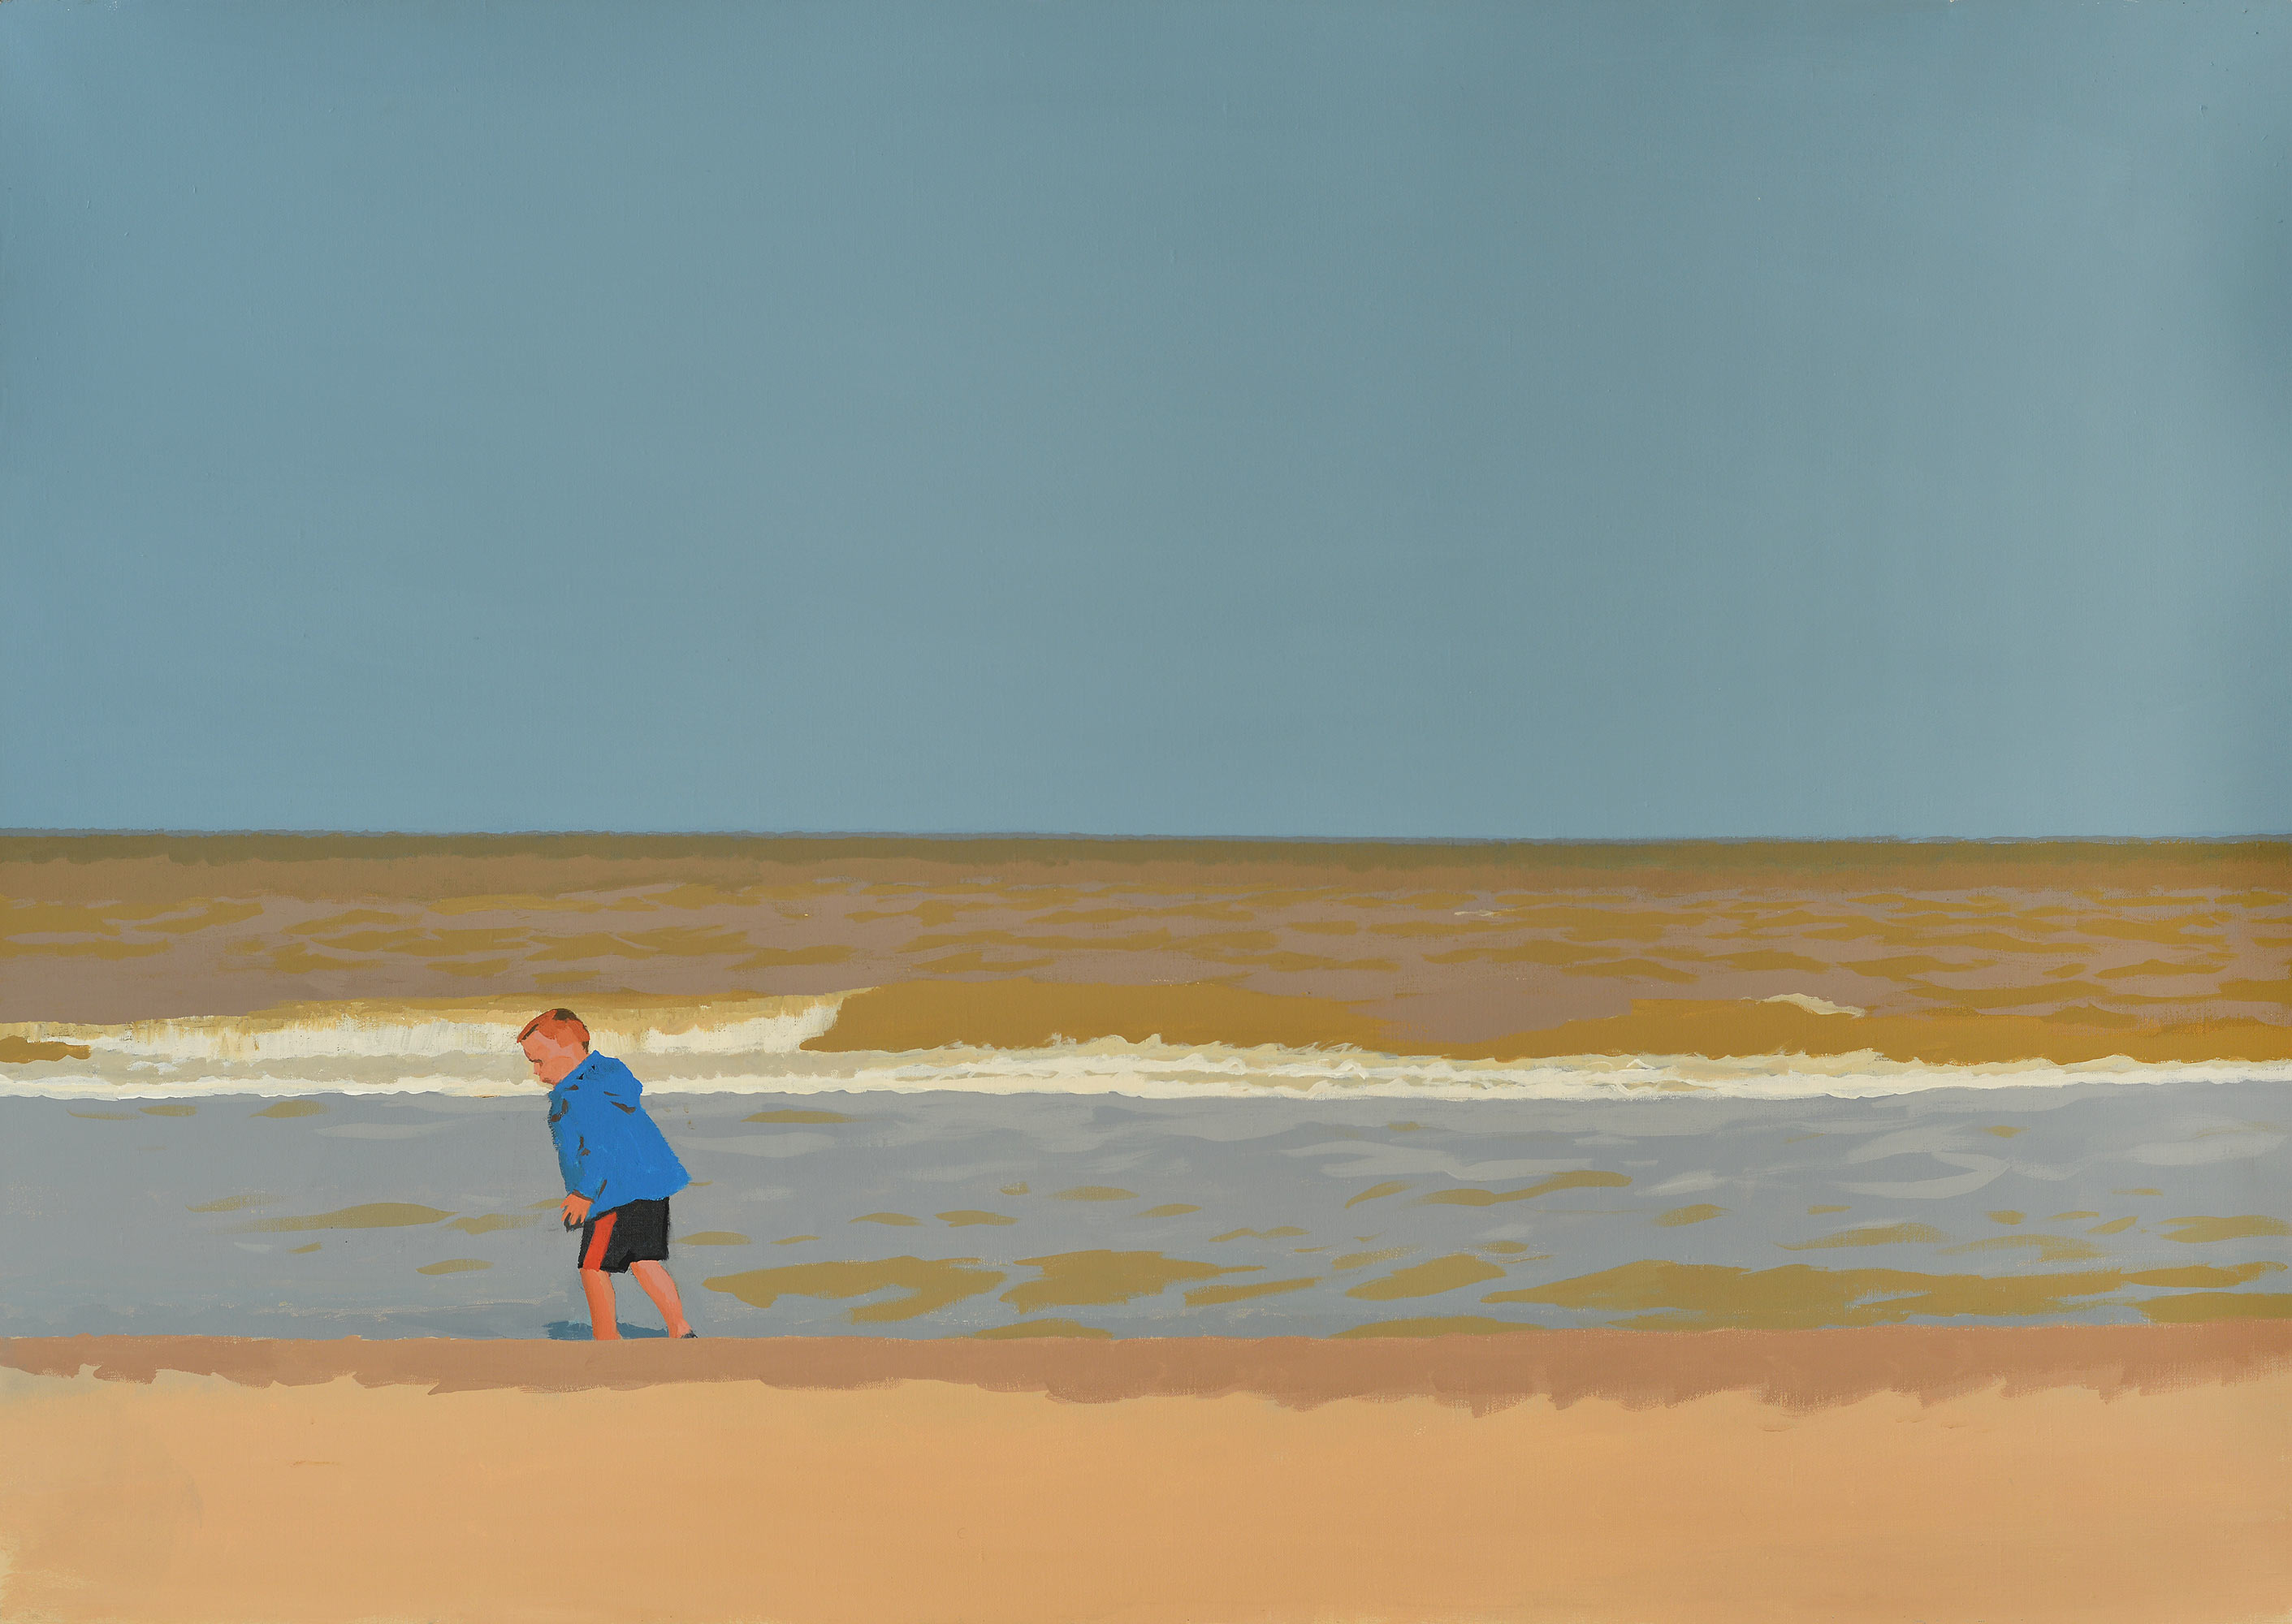 "Sea", 2015